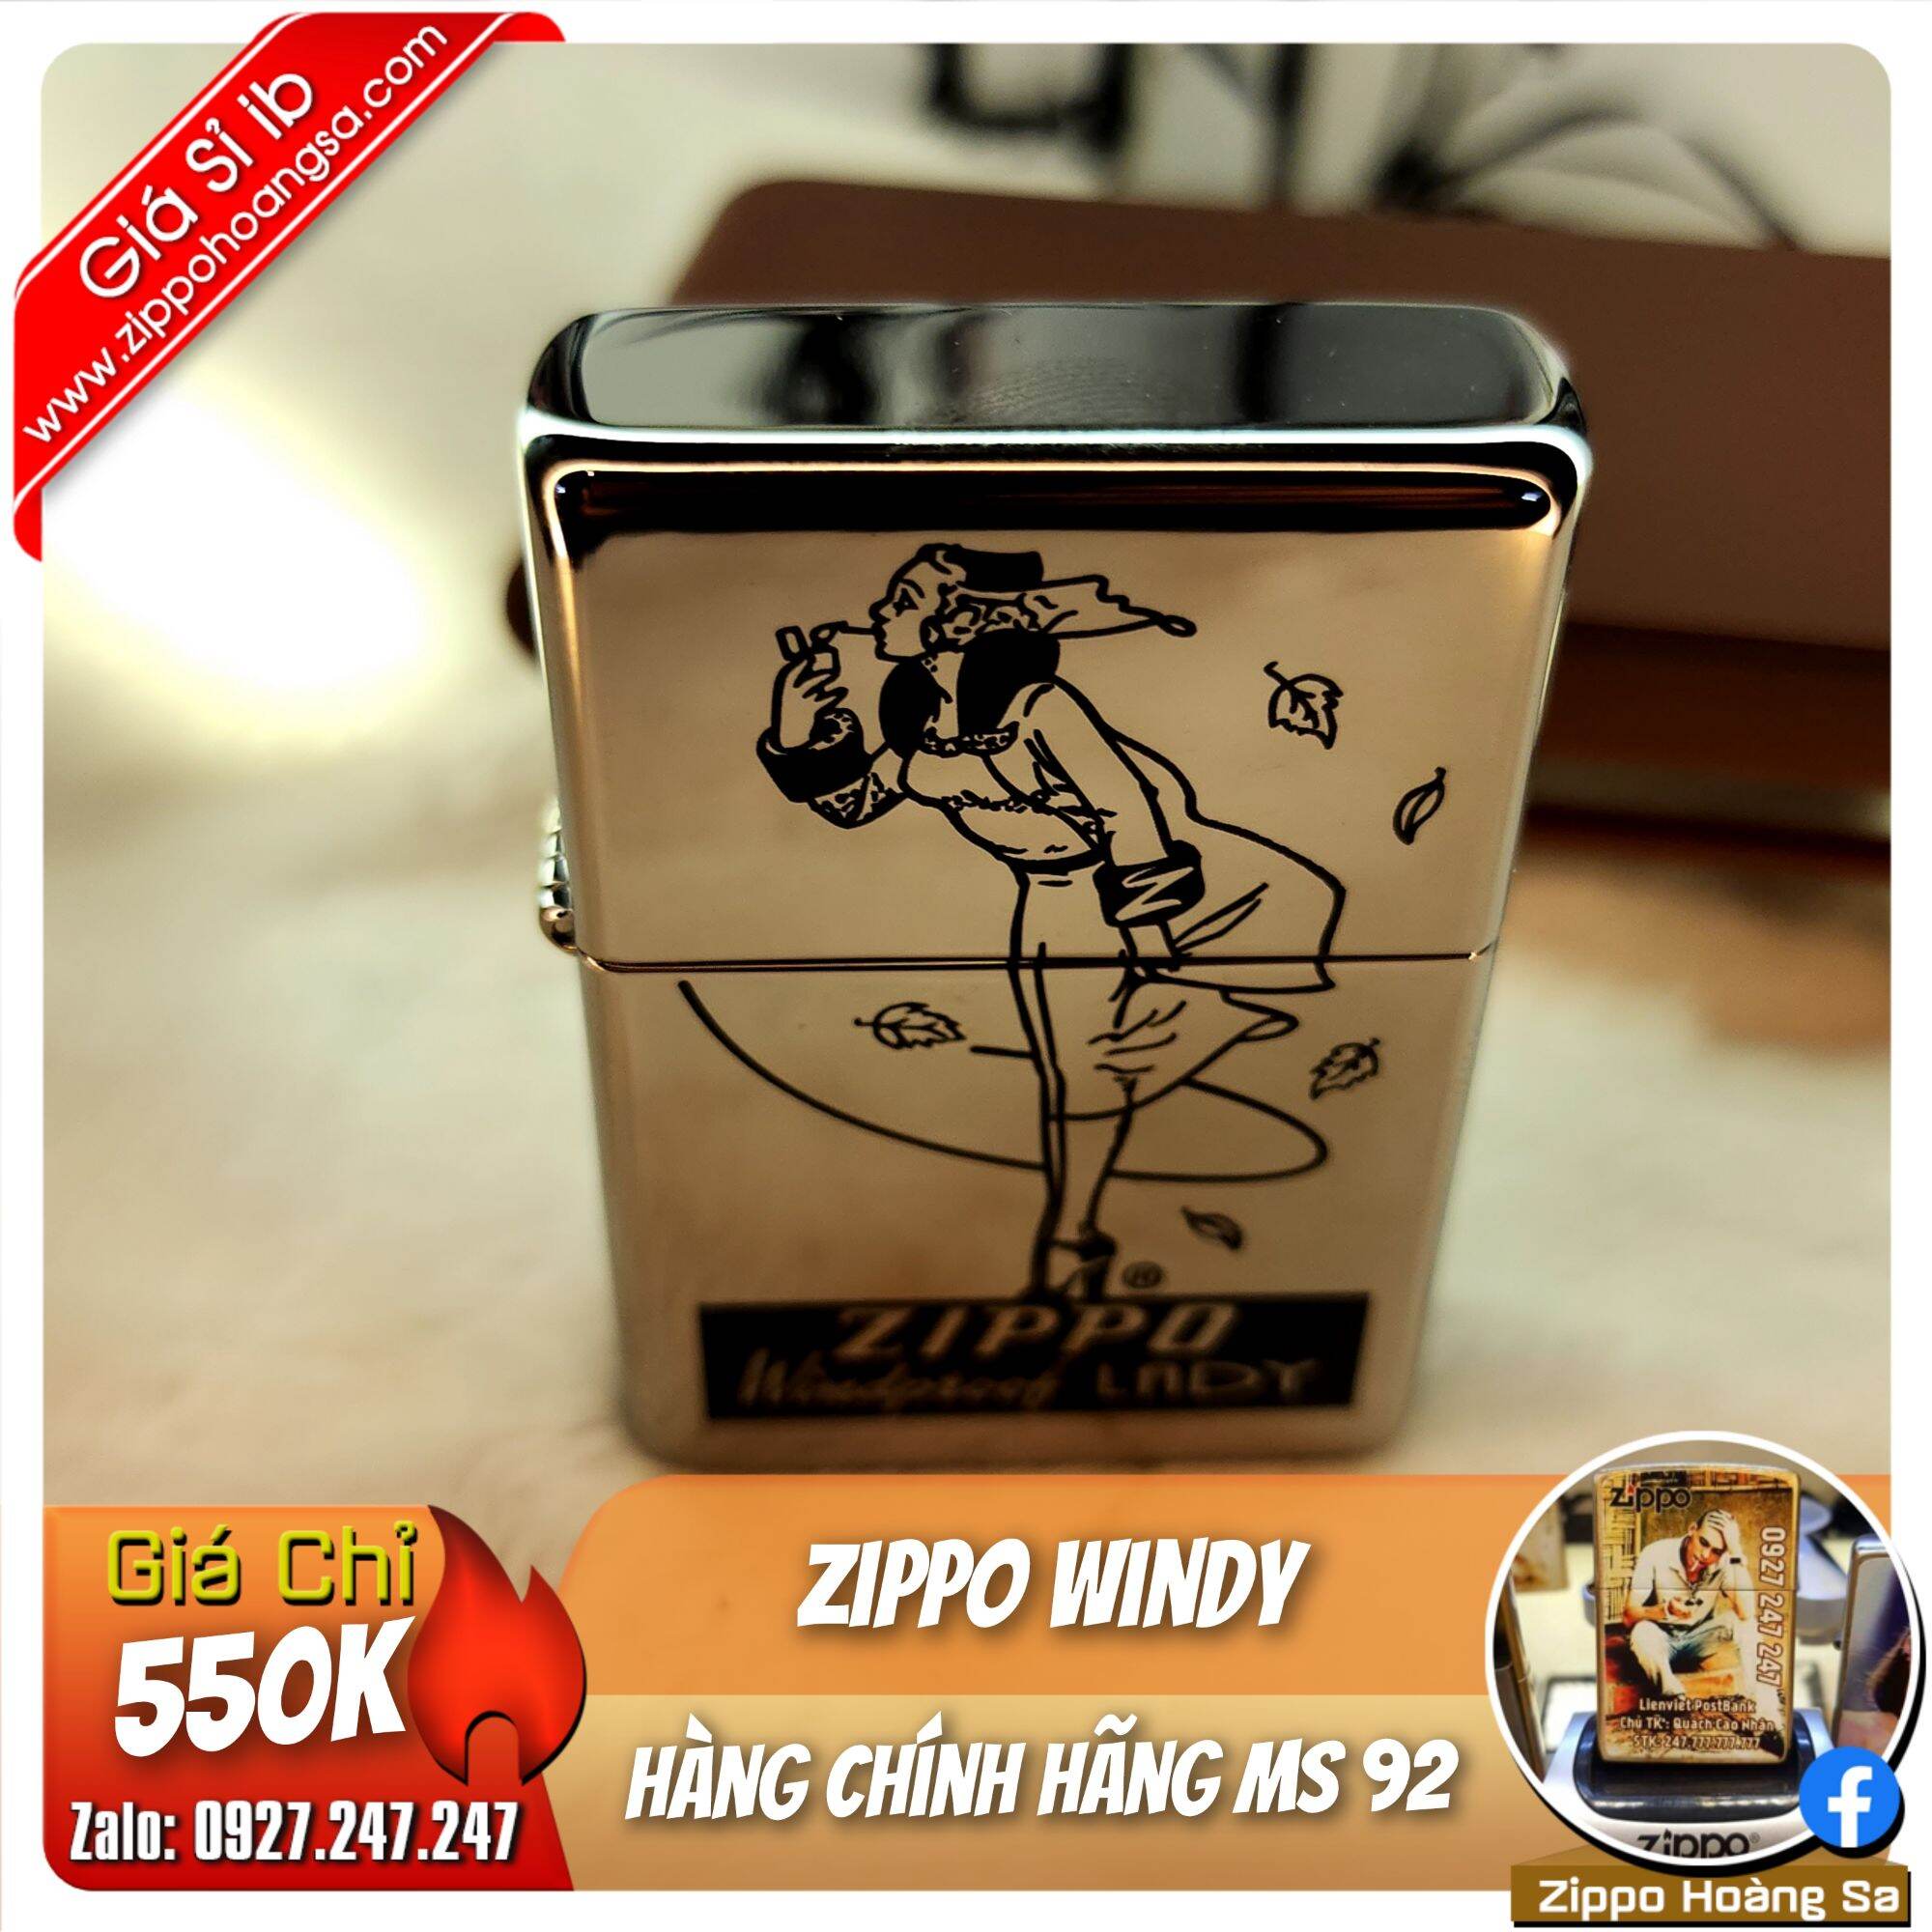 Zippo windy - Bật lửa Zippo chính hãng MS 92